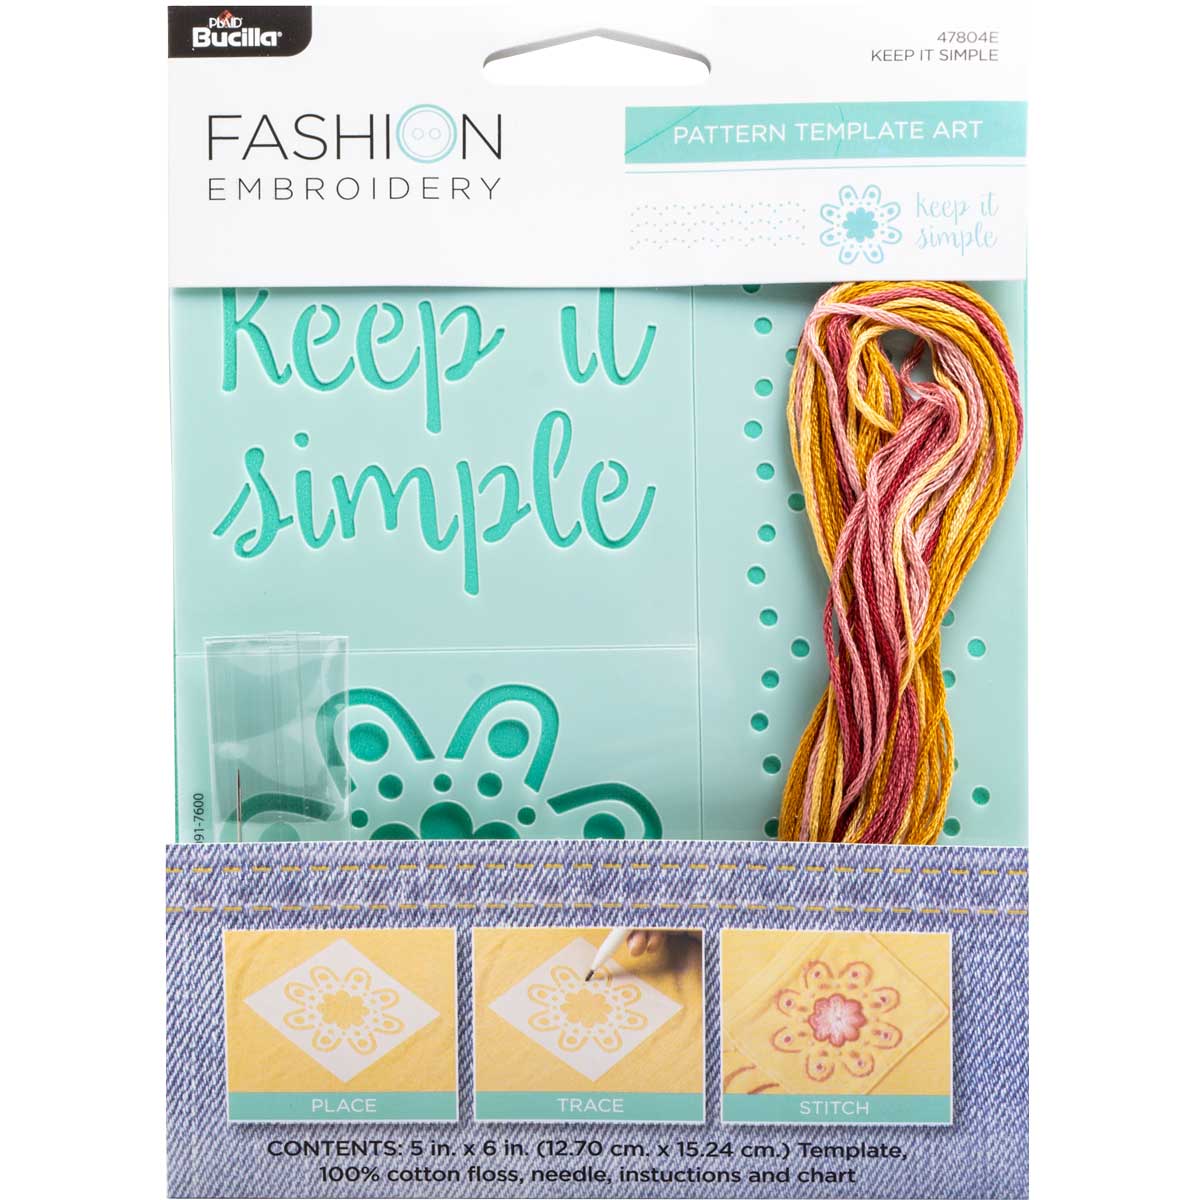 Bucilla ® Fashion Embroidery Kit - Keep It Simple - 47804E